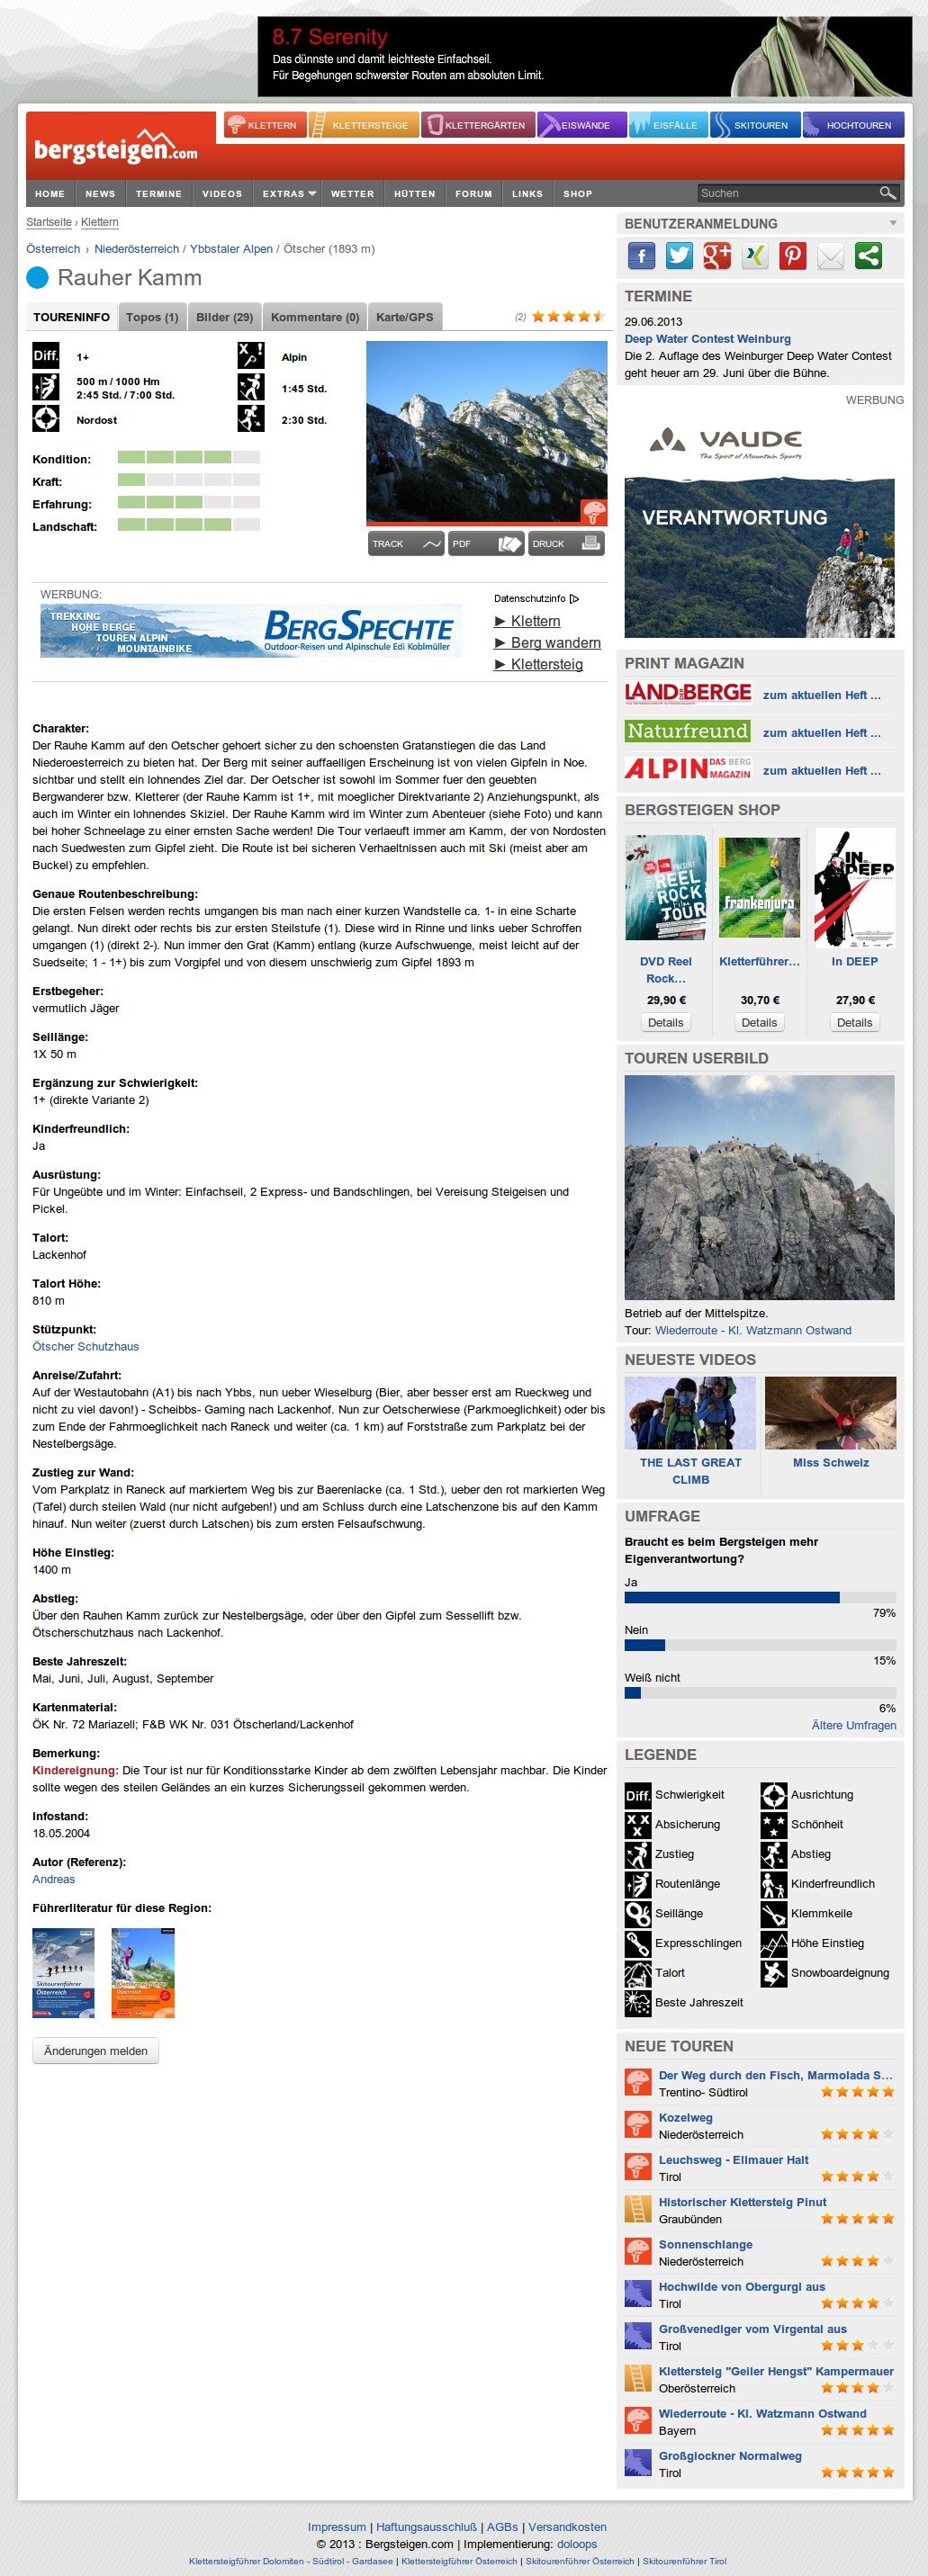 Bergsteigen.com - das Portal für Bergsteiger.